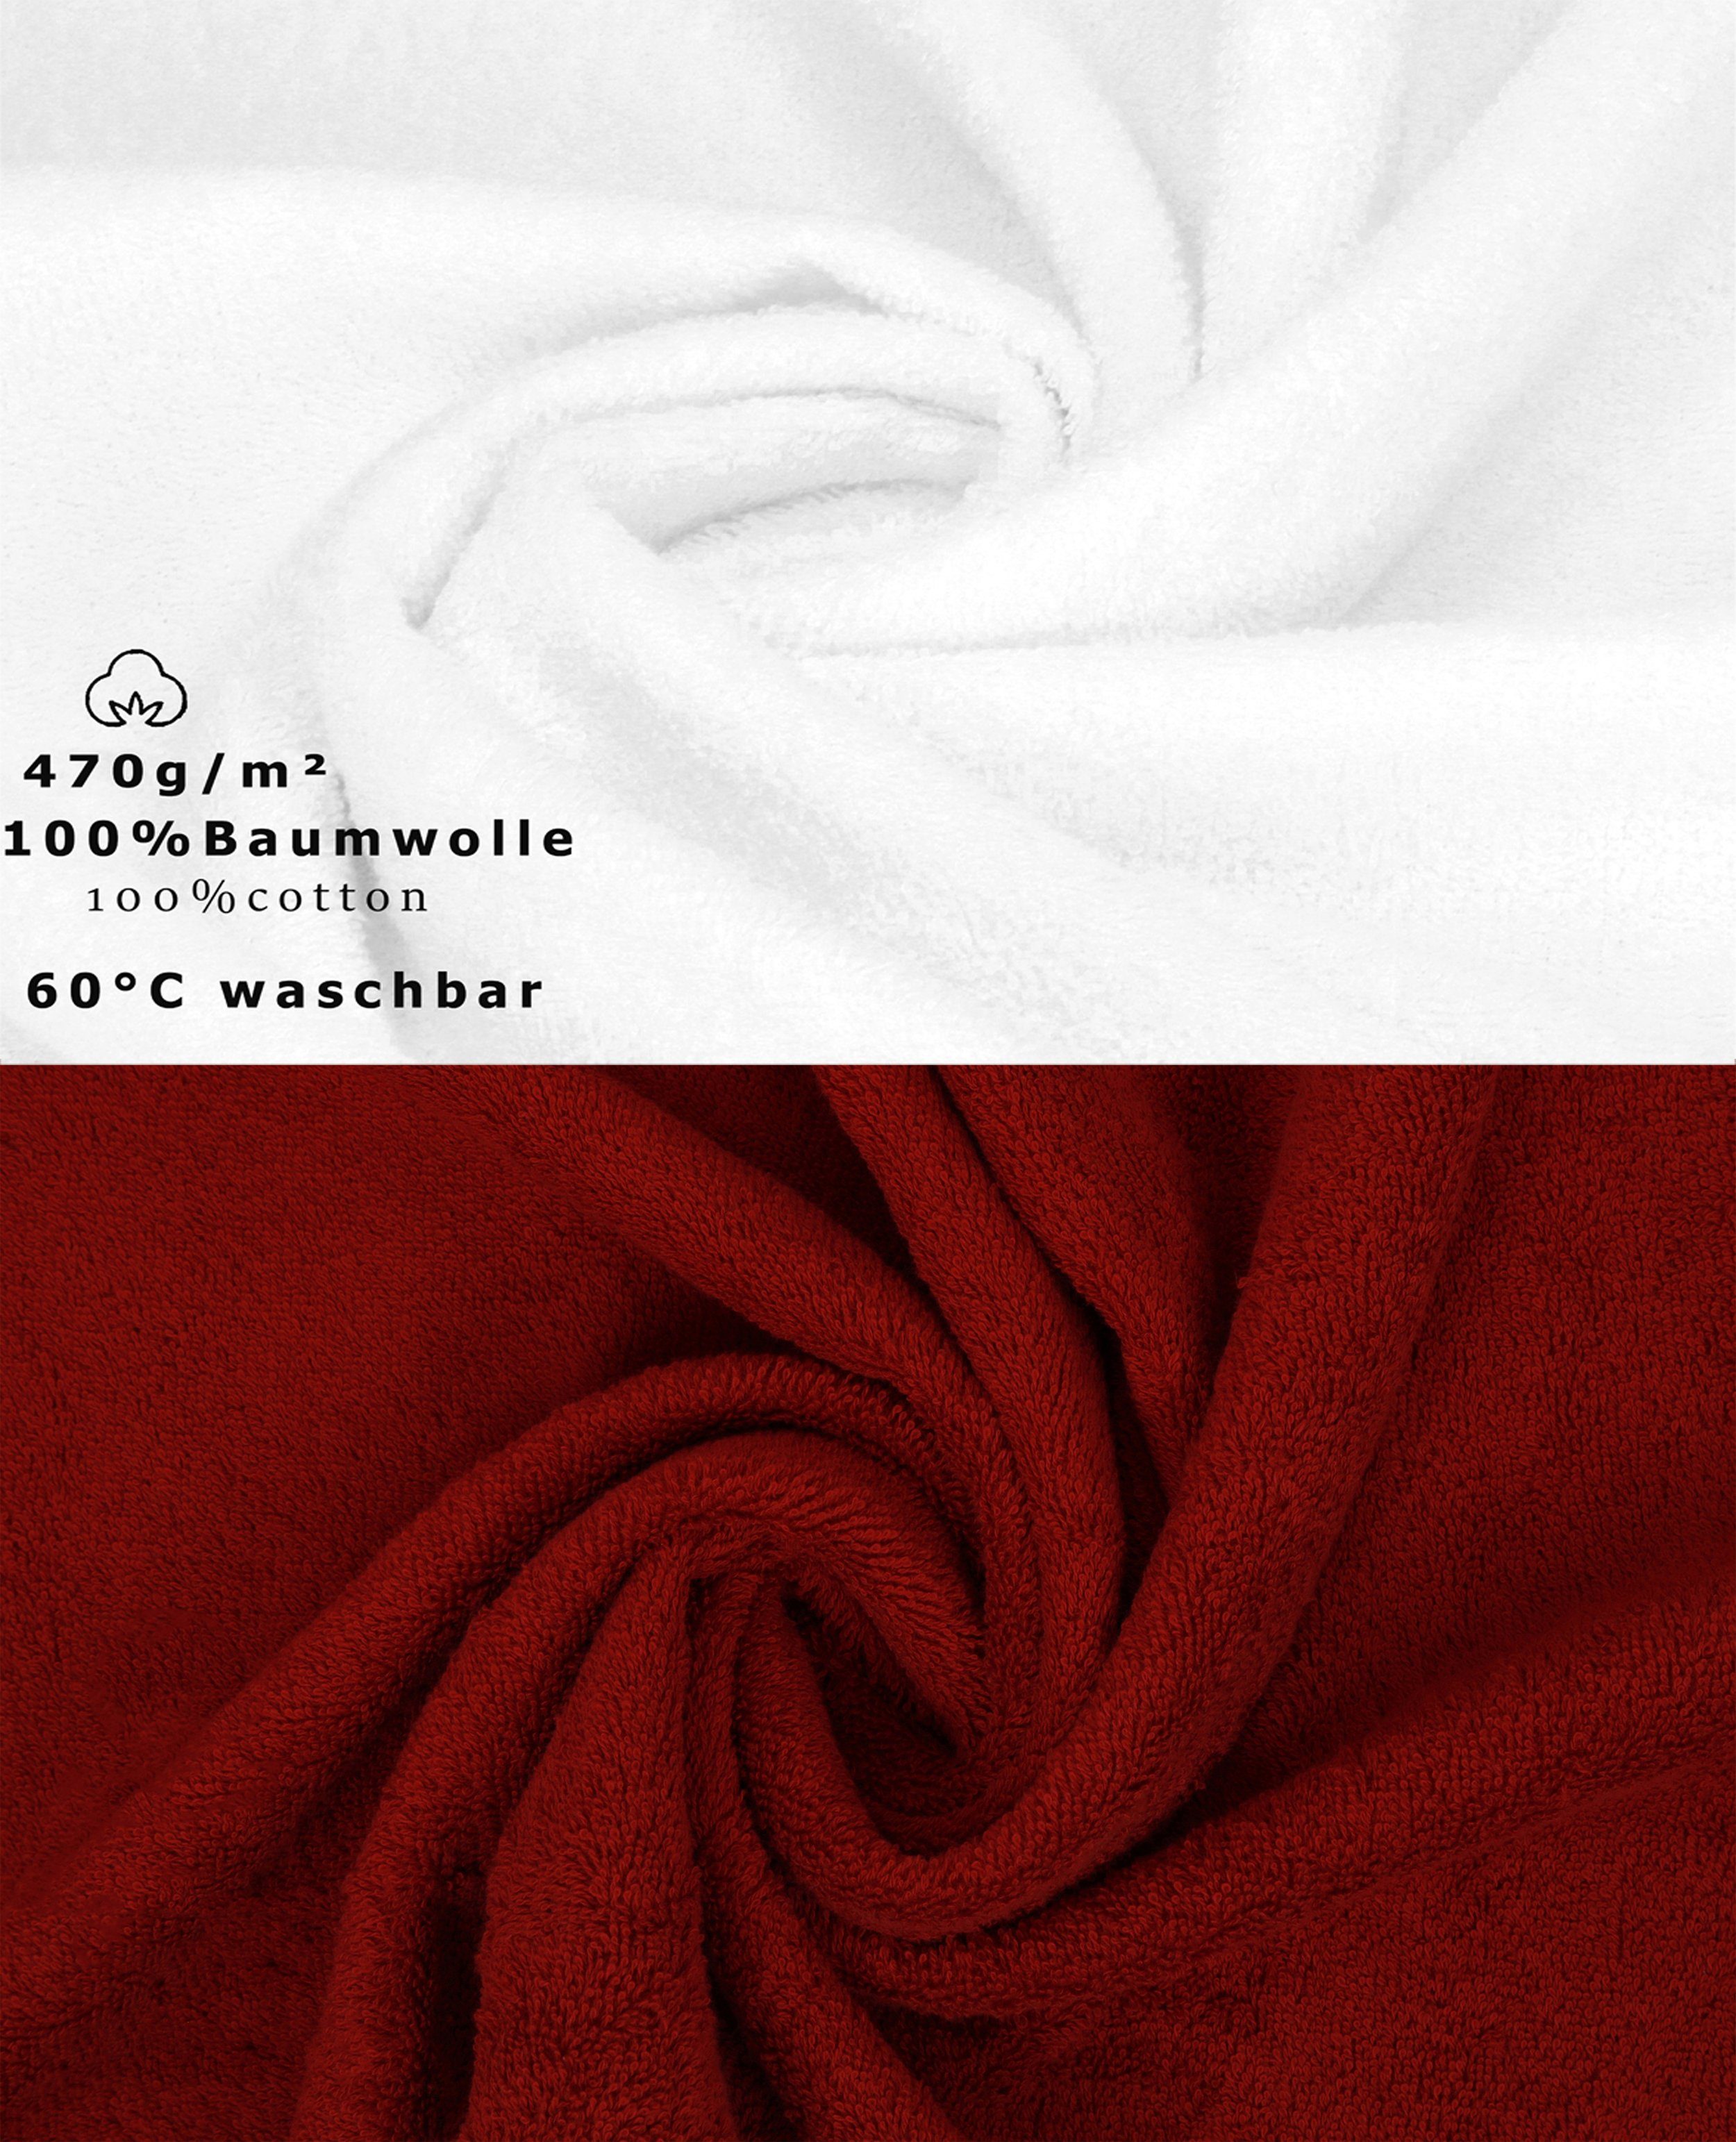 Premium Handtuch Betz Farbe (12-tlg) 100% Handtuch weiß/rubinrot, Set 12-TLG. Set Baumwolle,